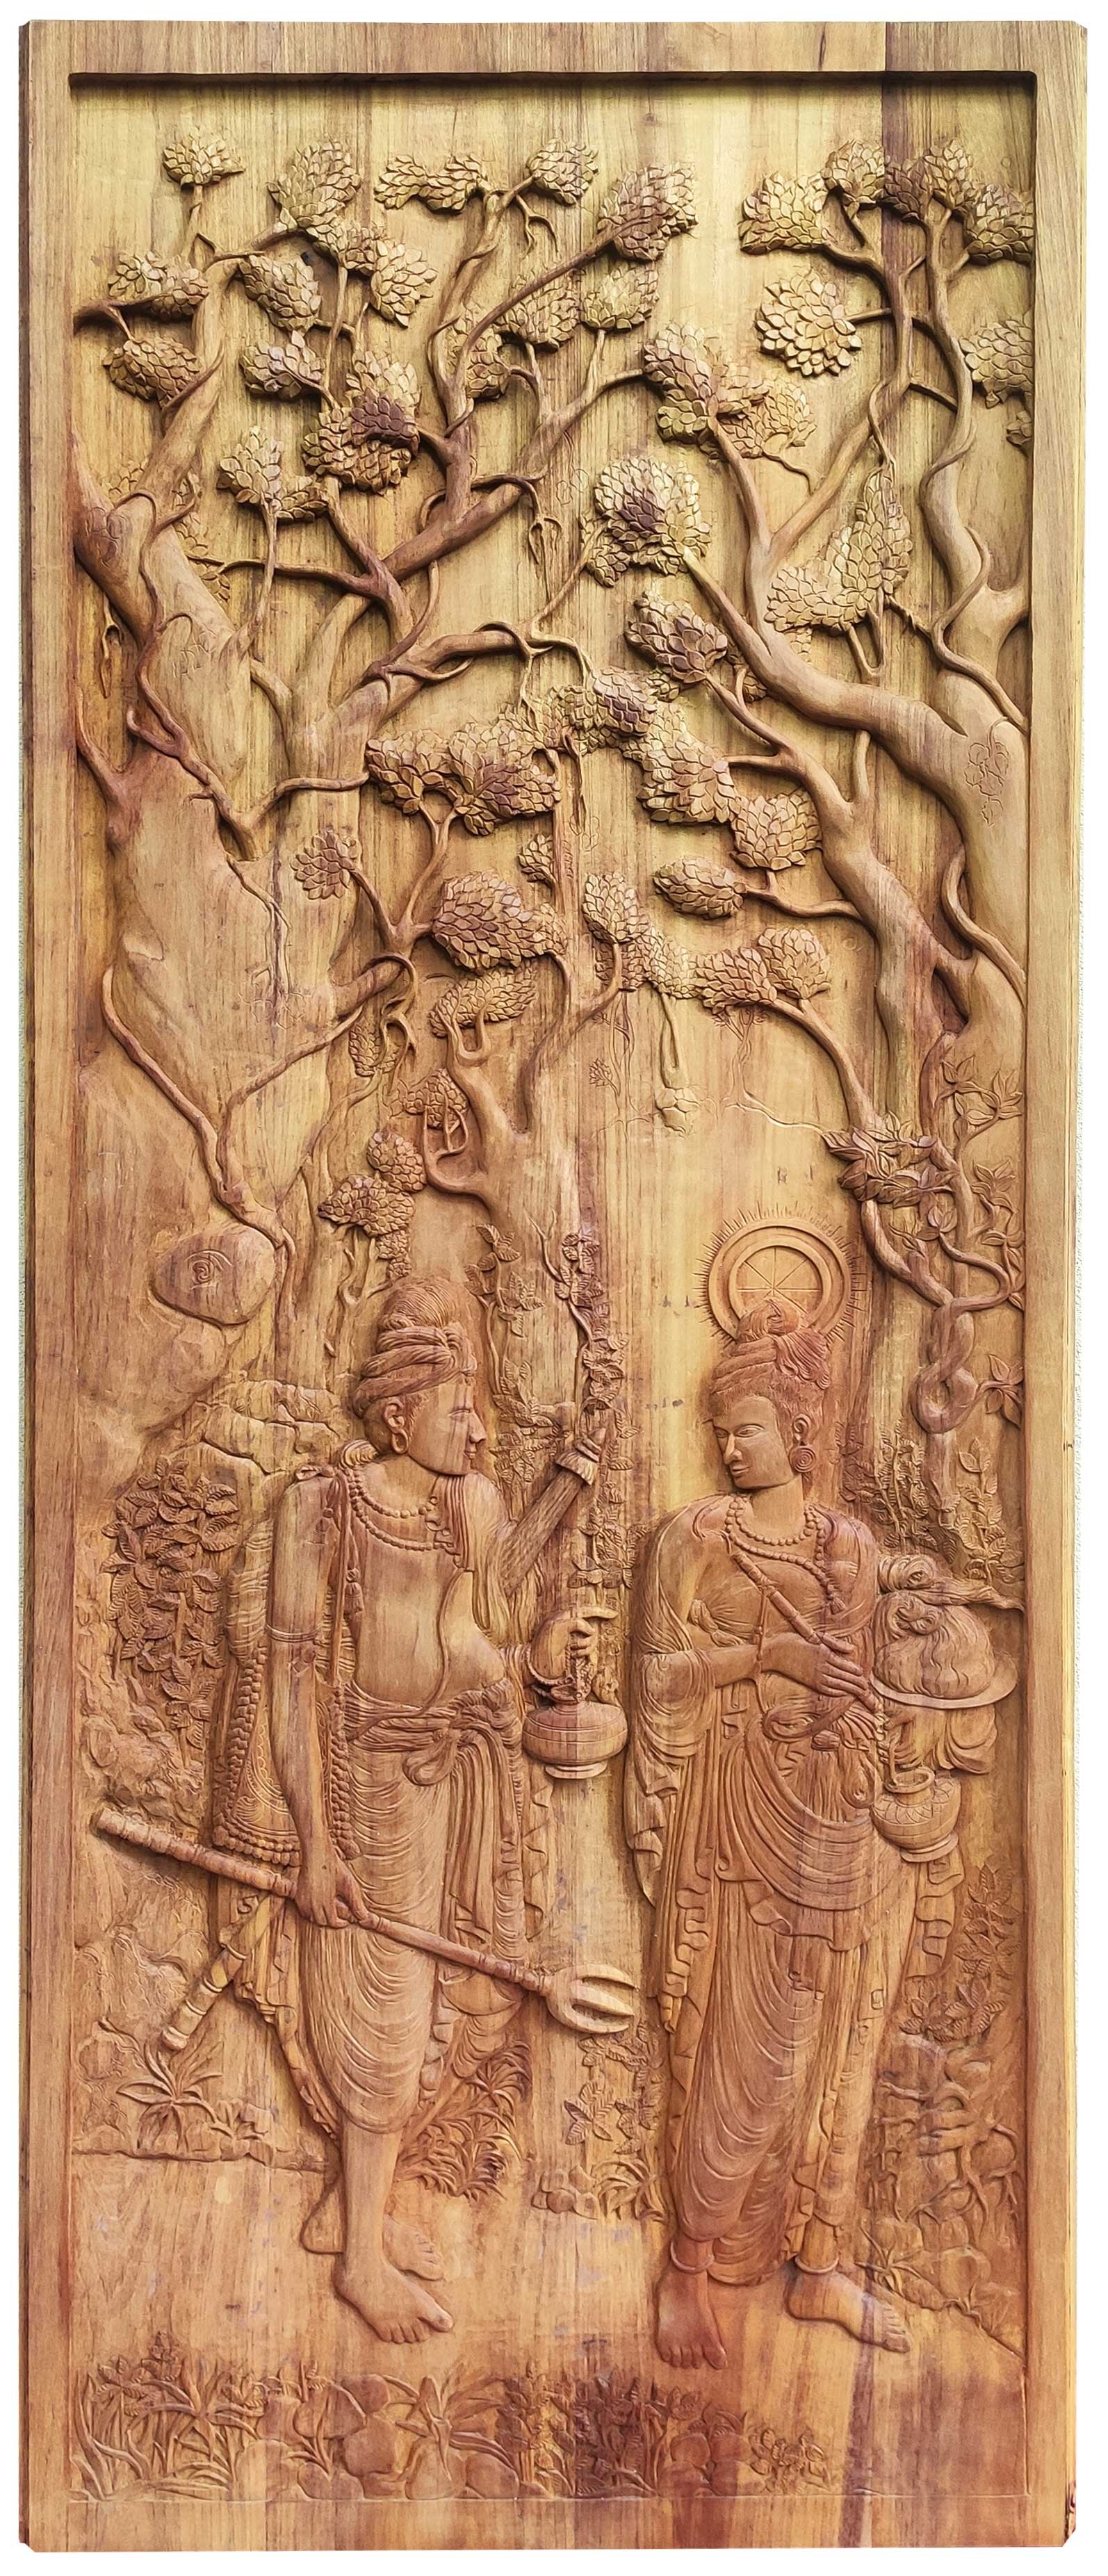 Sacred Tooth Relic Wood Carving by Widalath Arachchilage Jayathilaka